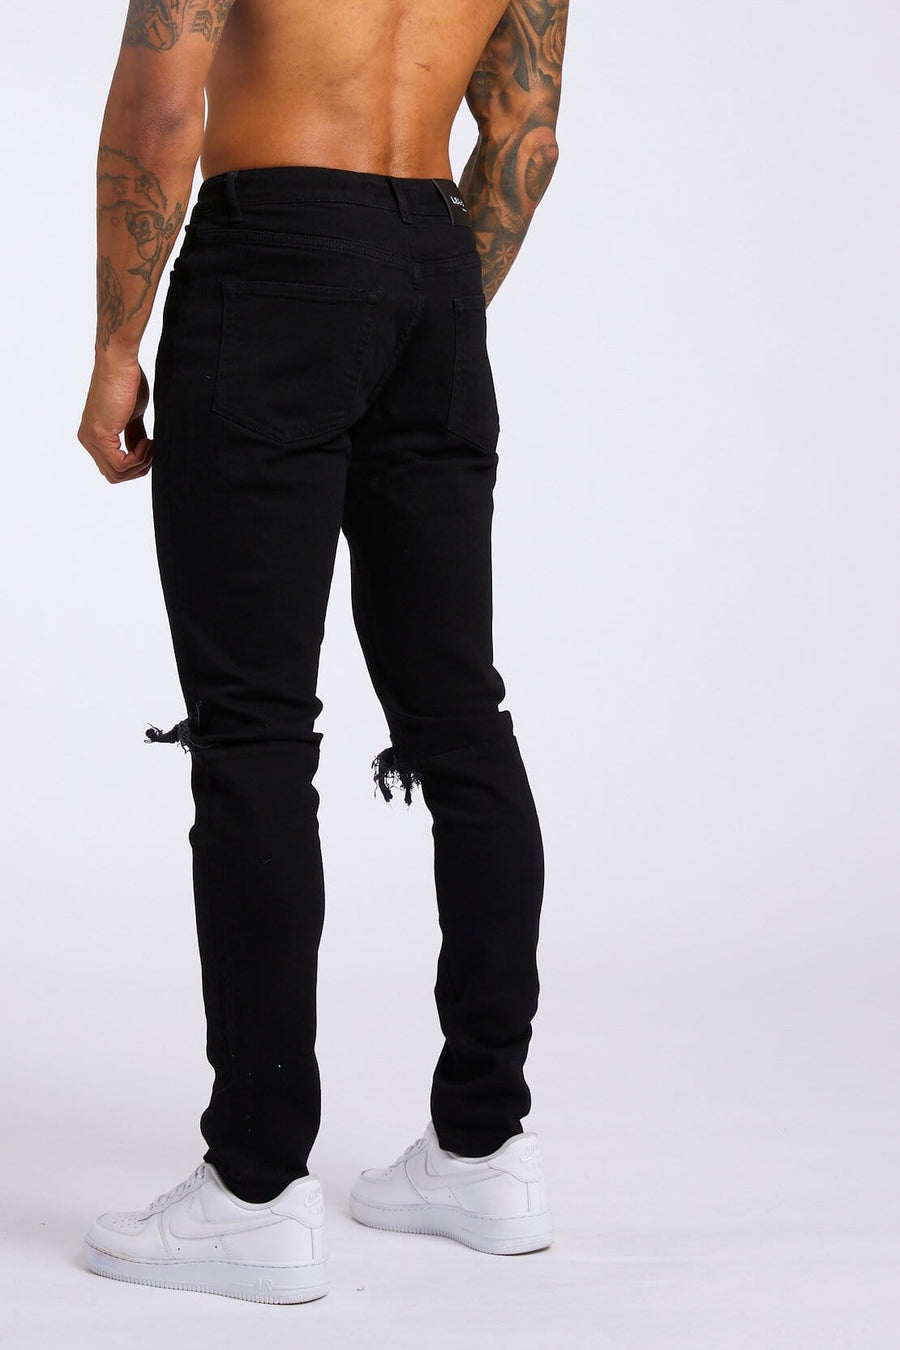 Legend London Jeans SLIM FIT JEANS - BLACK DESTROYED KNEE